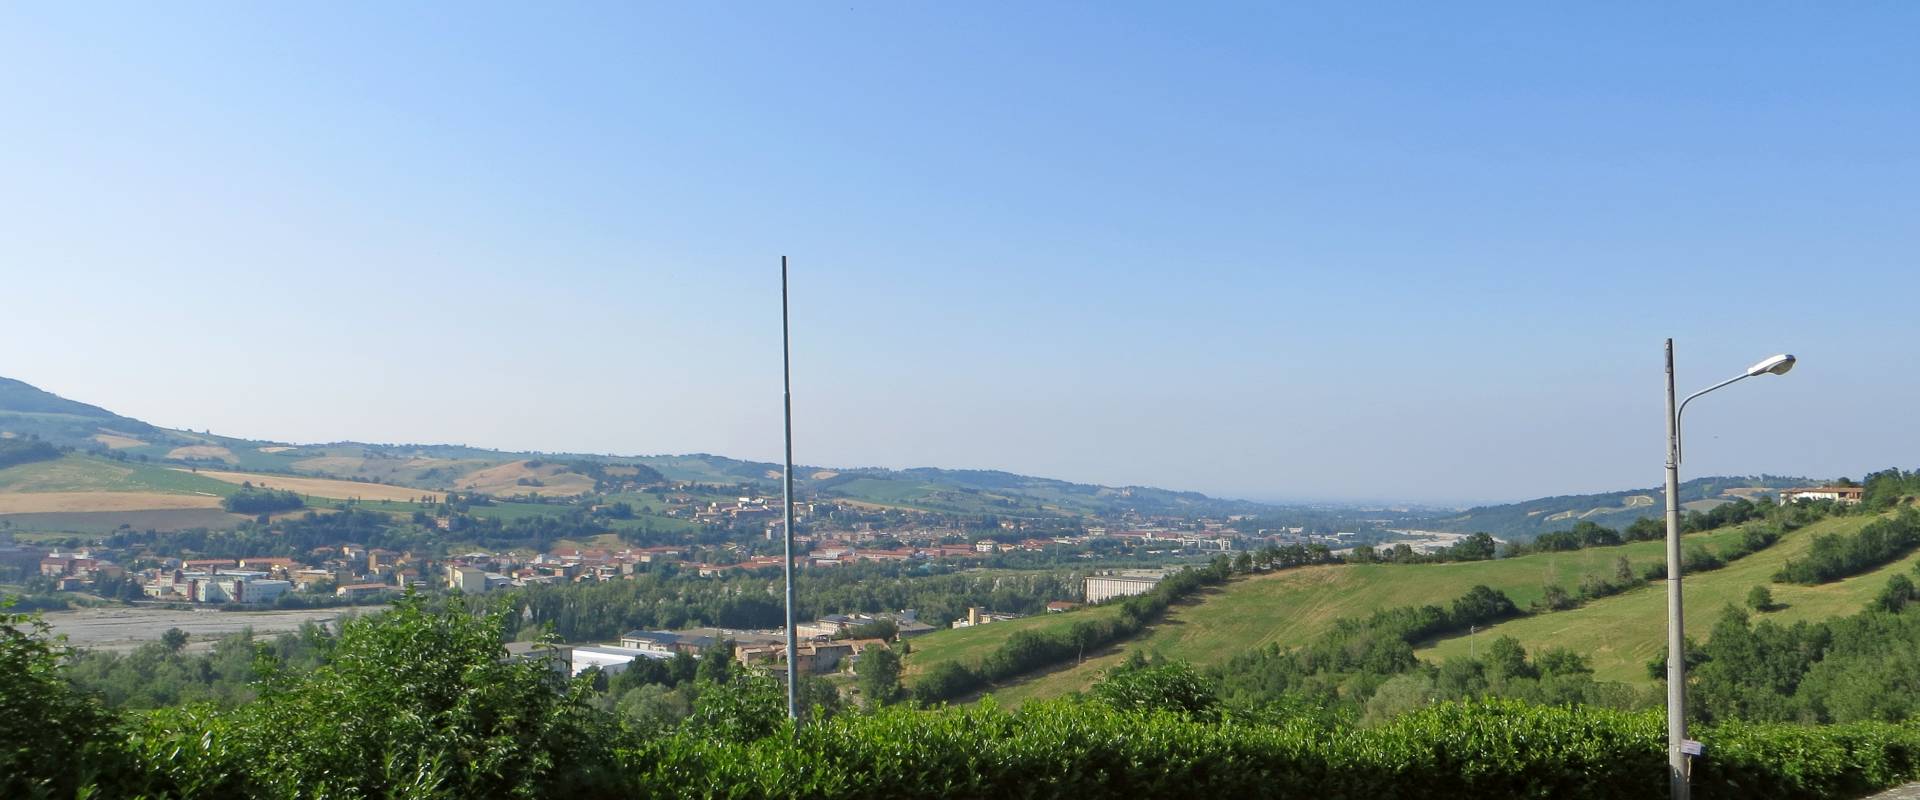 San Michele Cavana (Lesignano de' Bagni) - panorama sulla Val Parma dall'abbazia di San Basilide 2019-06-26 photo by Parma198